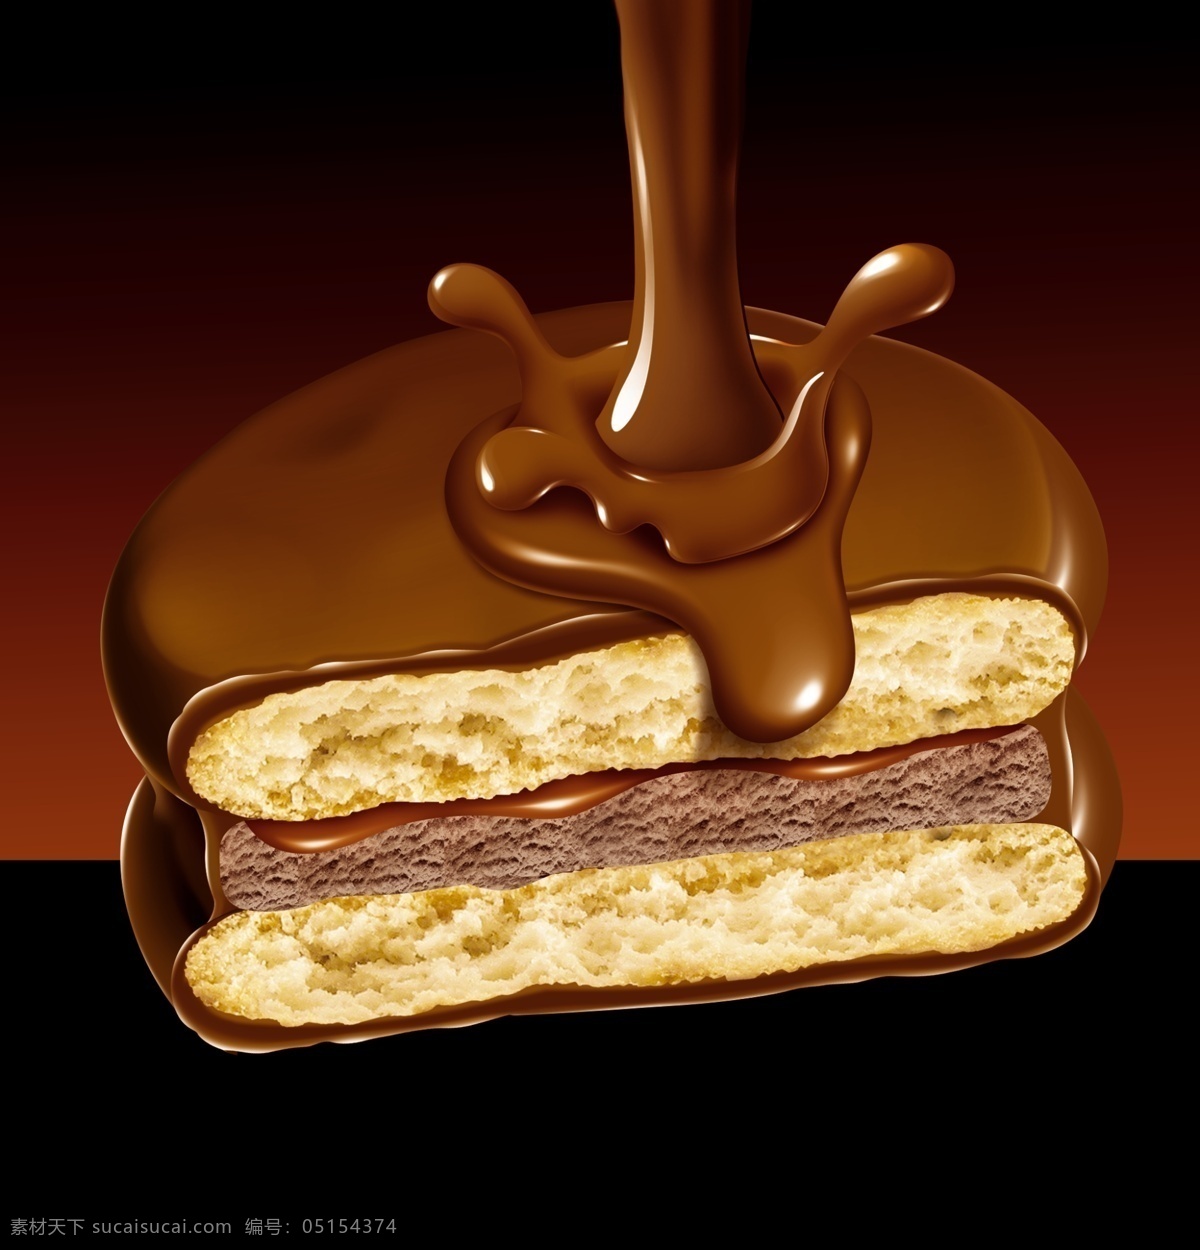 双层 夹心 巧克力 饼干 巧克力饼干 巧克力食物 psd源文件